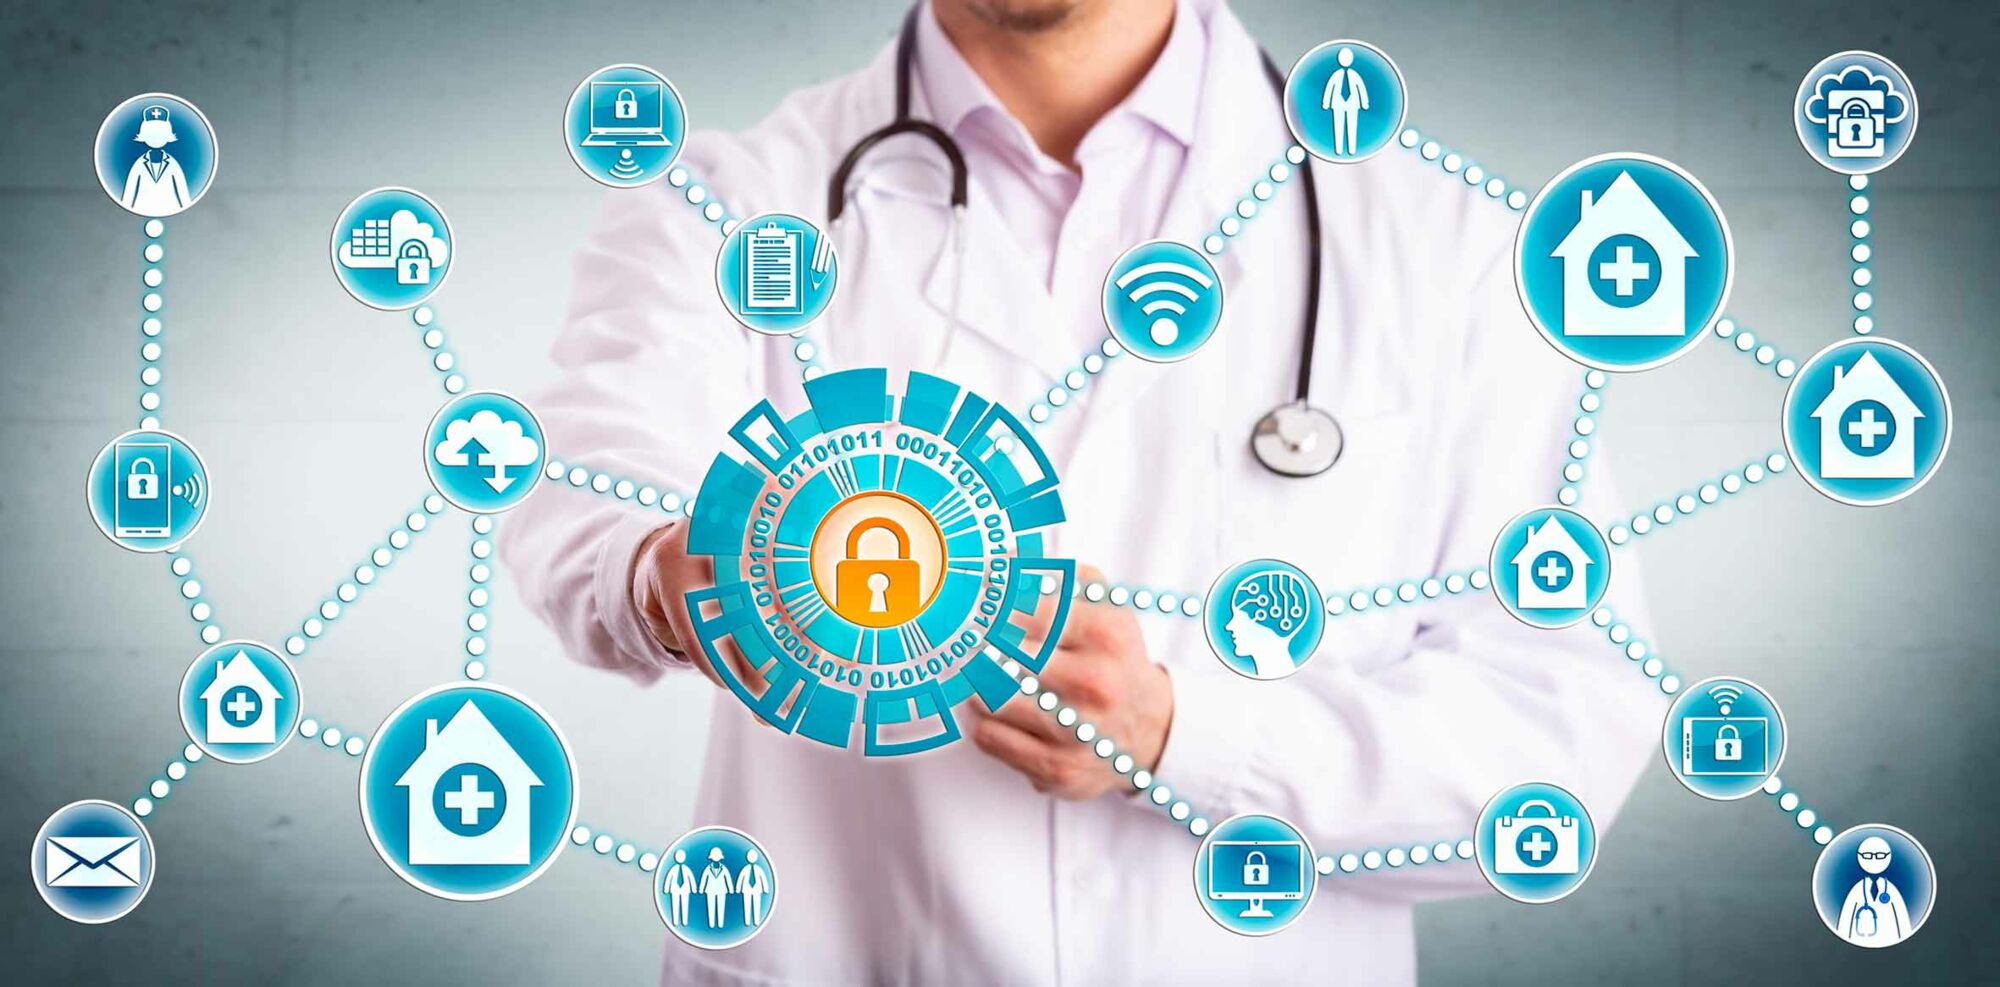 Das Foto zeigt einen Arzt hinter einem Netz aus Symbolen, die das Thema Datenschutz veranschaulichen sollen.